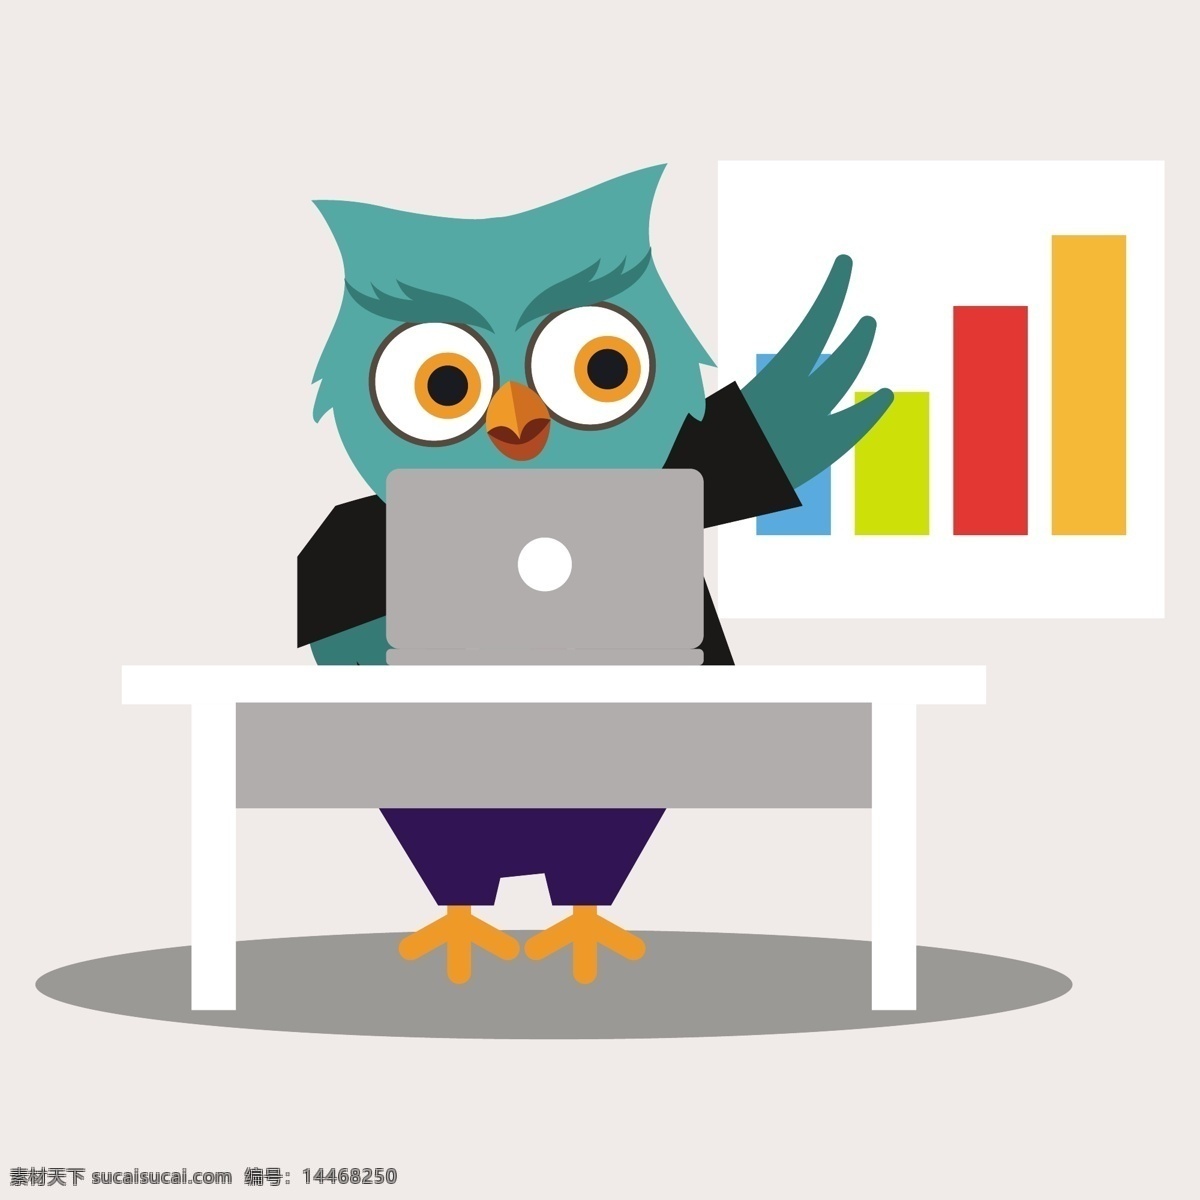 猫头鹰 卡通 角色 可爱 工人 爱 性格 办公室 鸟 动物 图表 笔记本电脑 五颜六色 宠物 鸟类 可爱的动物 爱鸟 卡通动物 职业